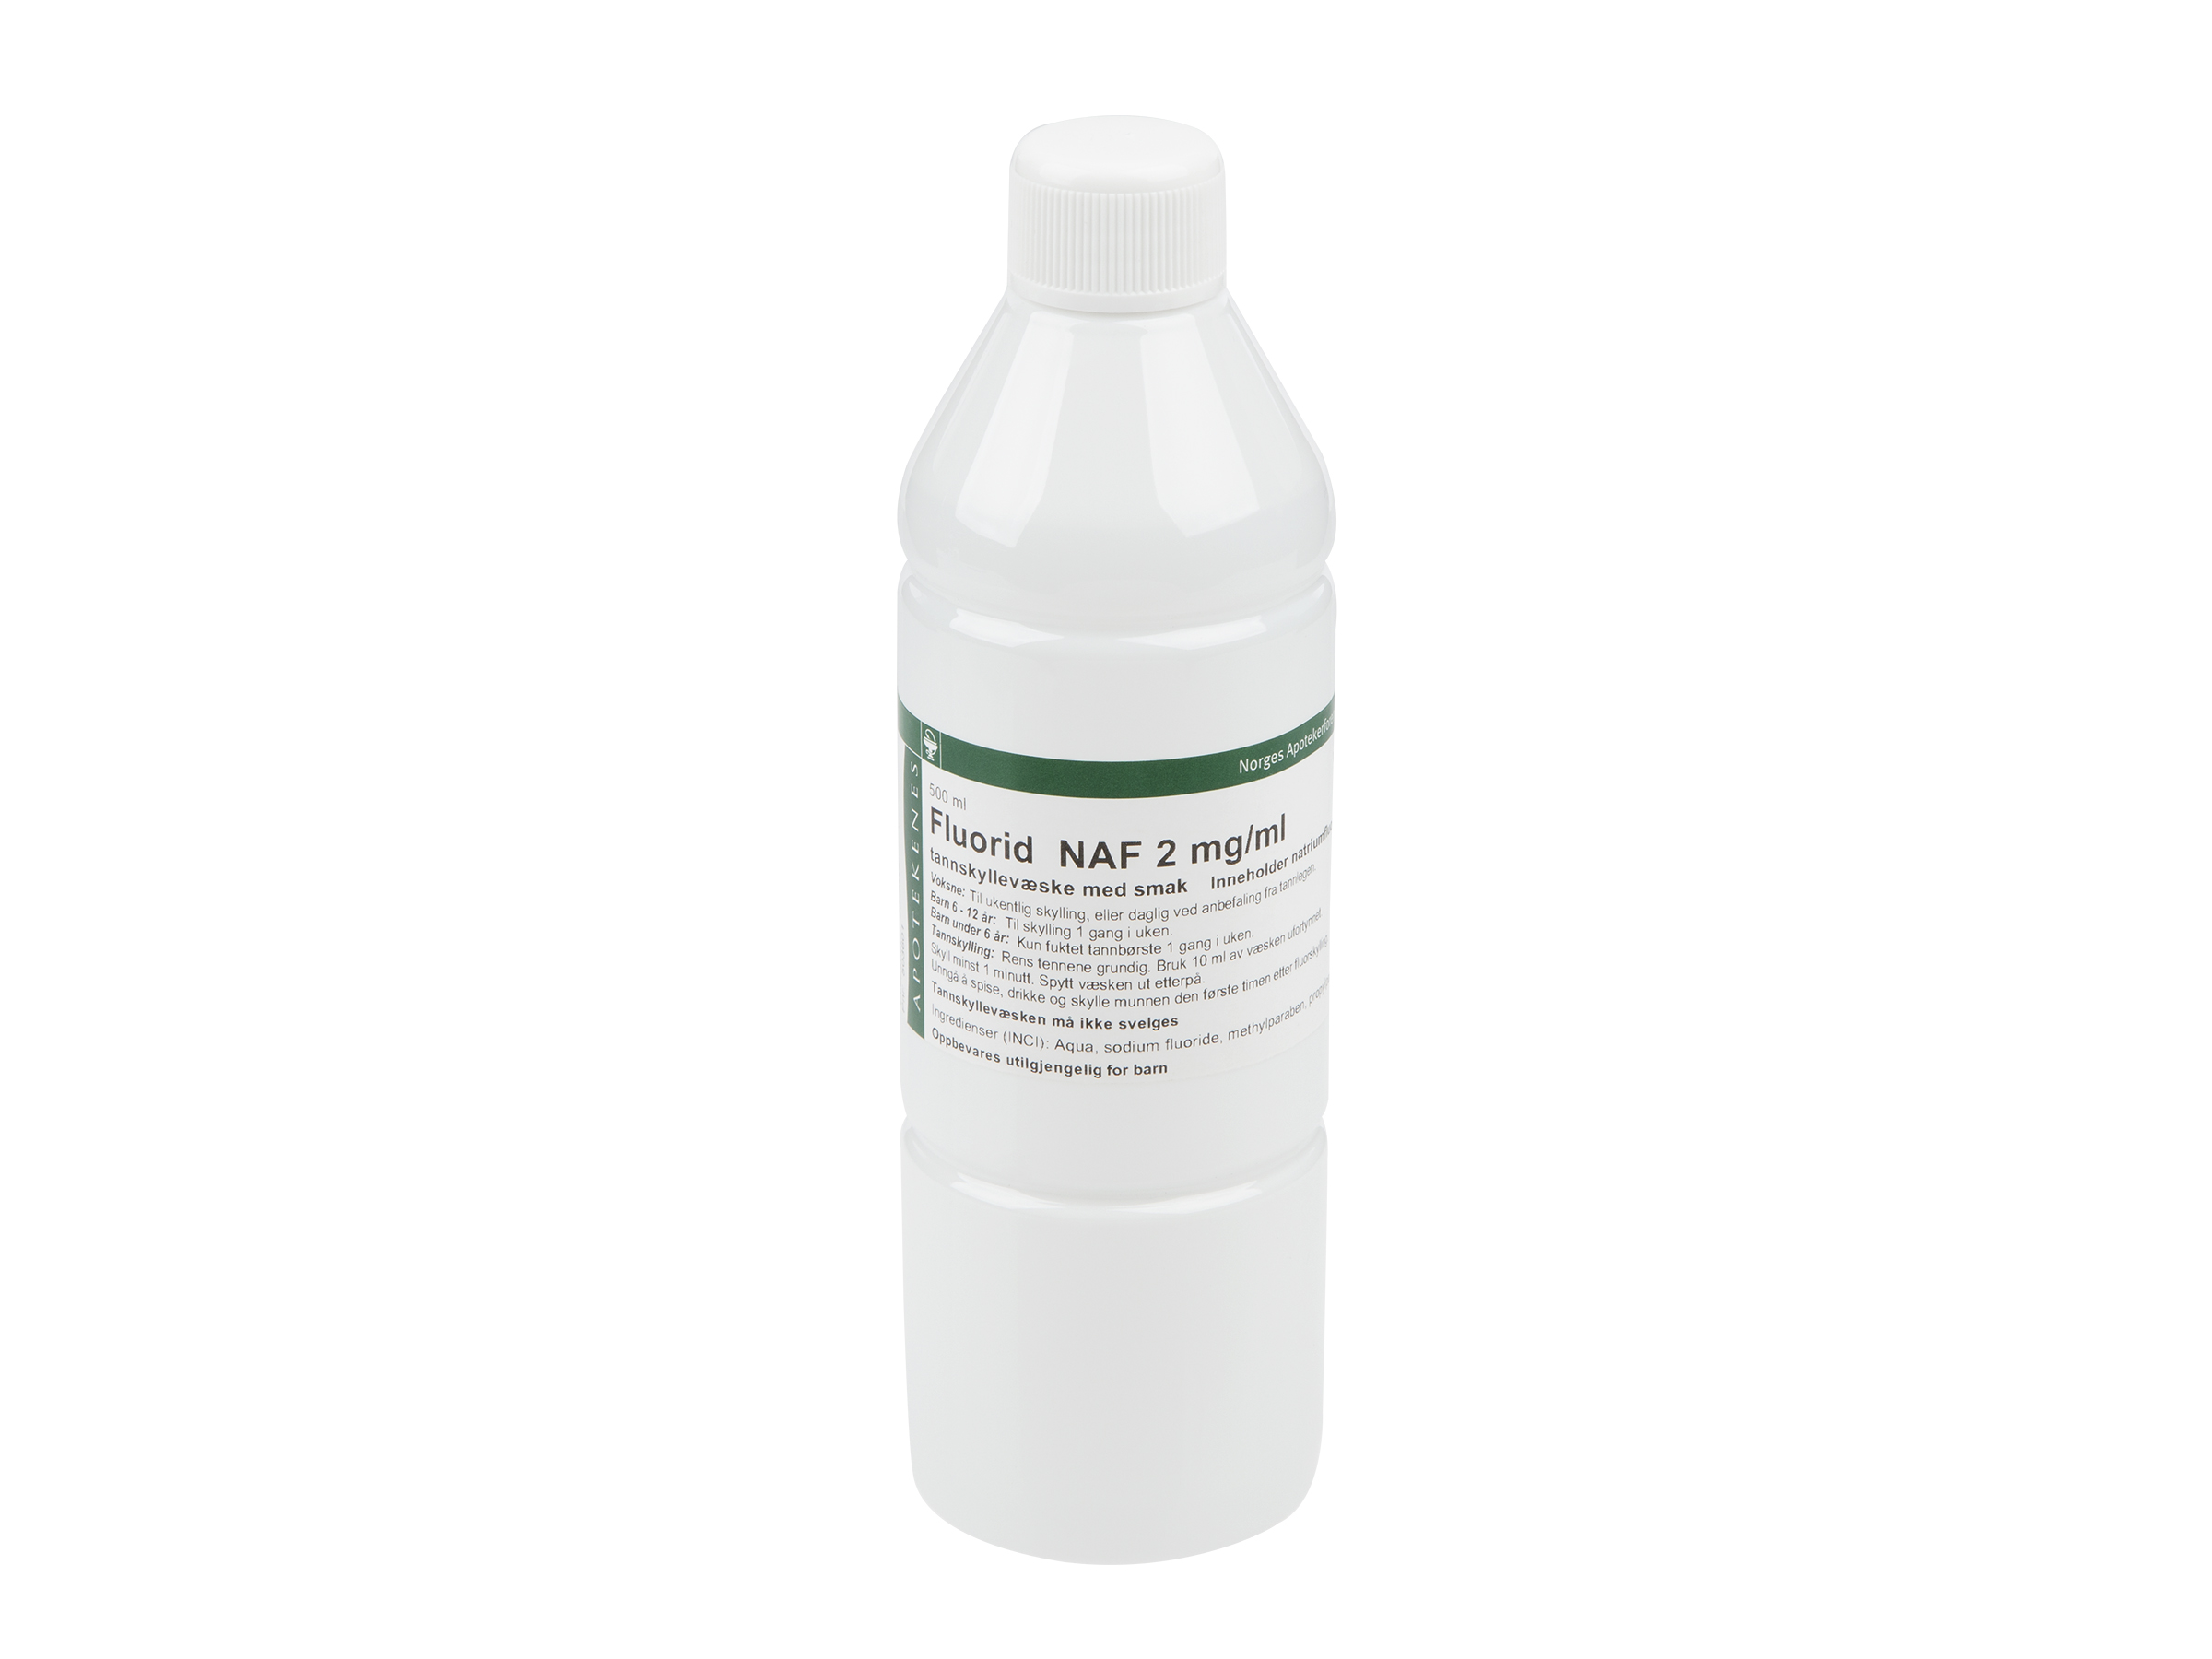 Fluorid NAF tannskyll 2mg/ml mintsmak, 500 ml